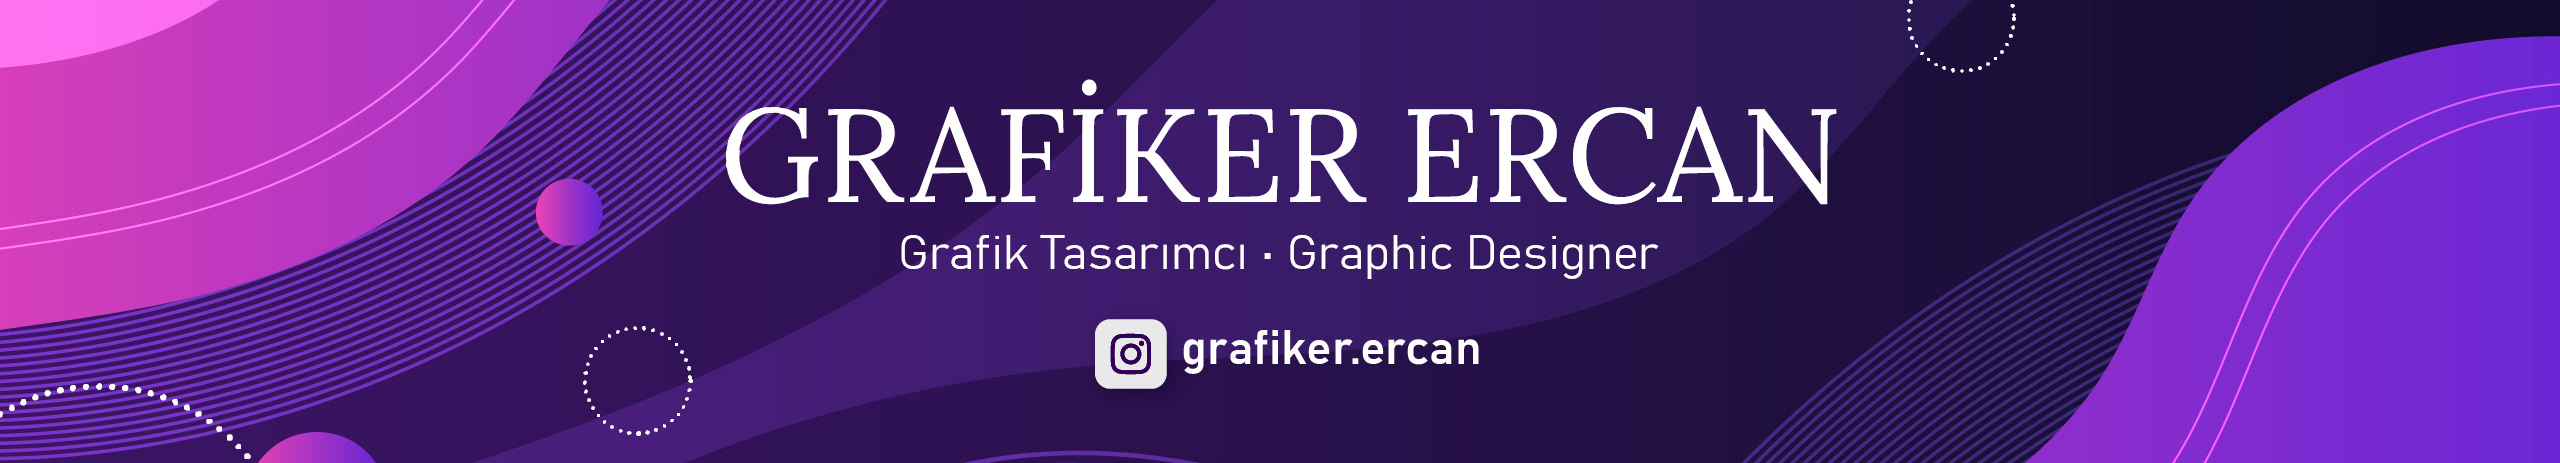 Grafiker Ercans profilbanner